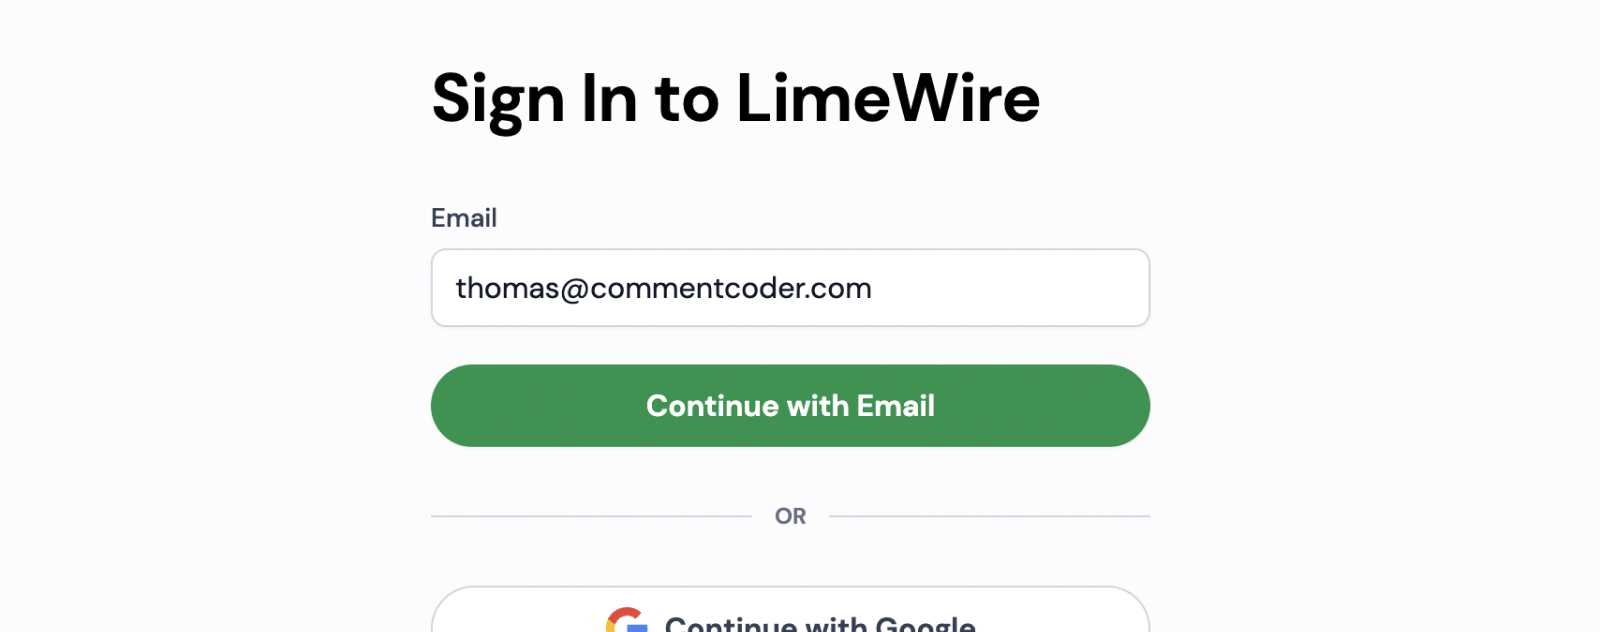 S'inscrire par email sur LimeWire